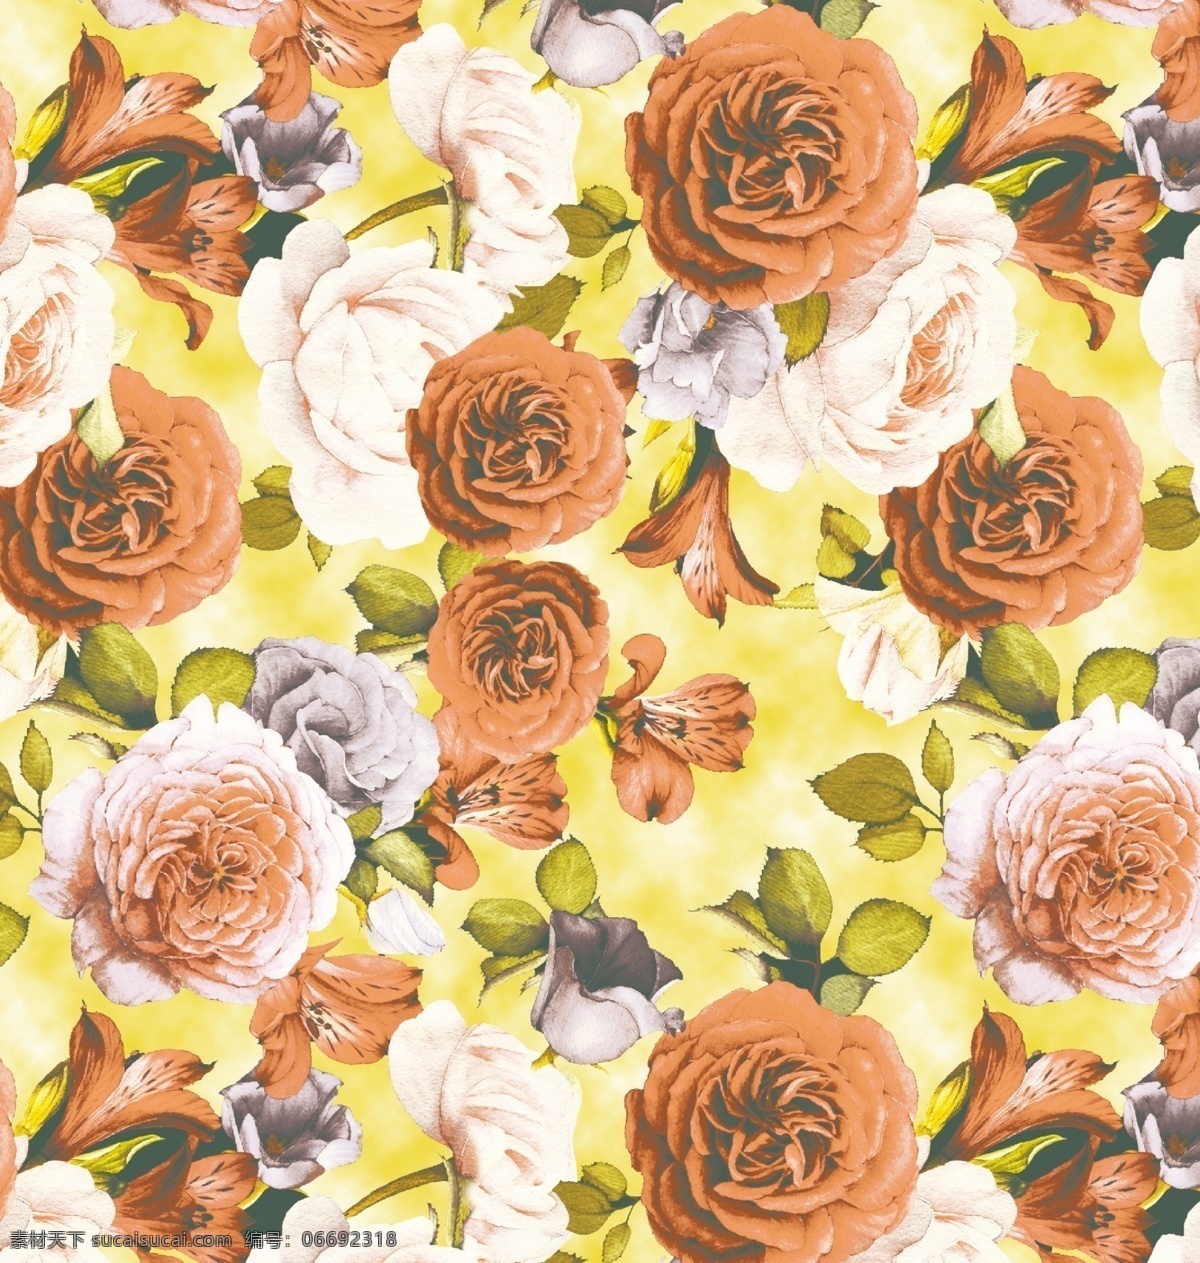 黄 底 红花 数码 印花 数码印花 服装设计图案 鞋材设计图案 印花花型 黄底红花 粉色花朵 黄底花朵图案